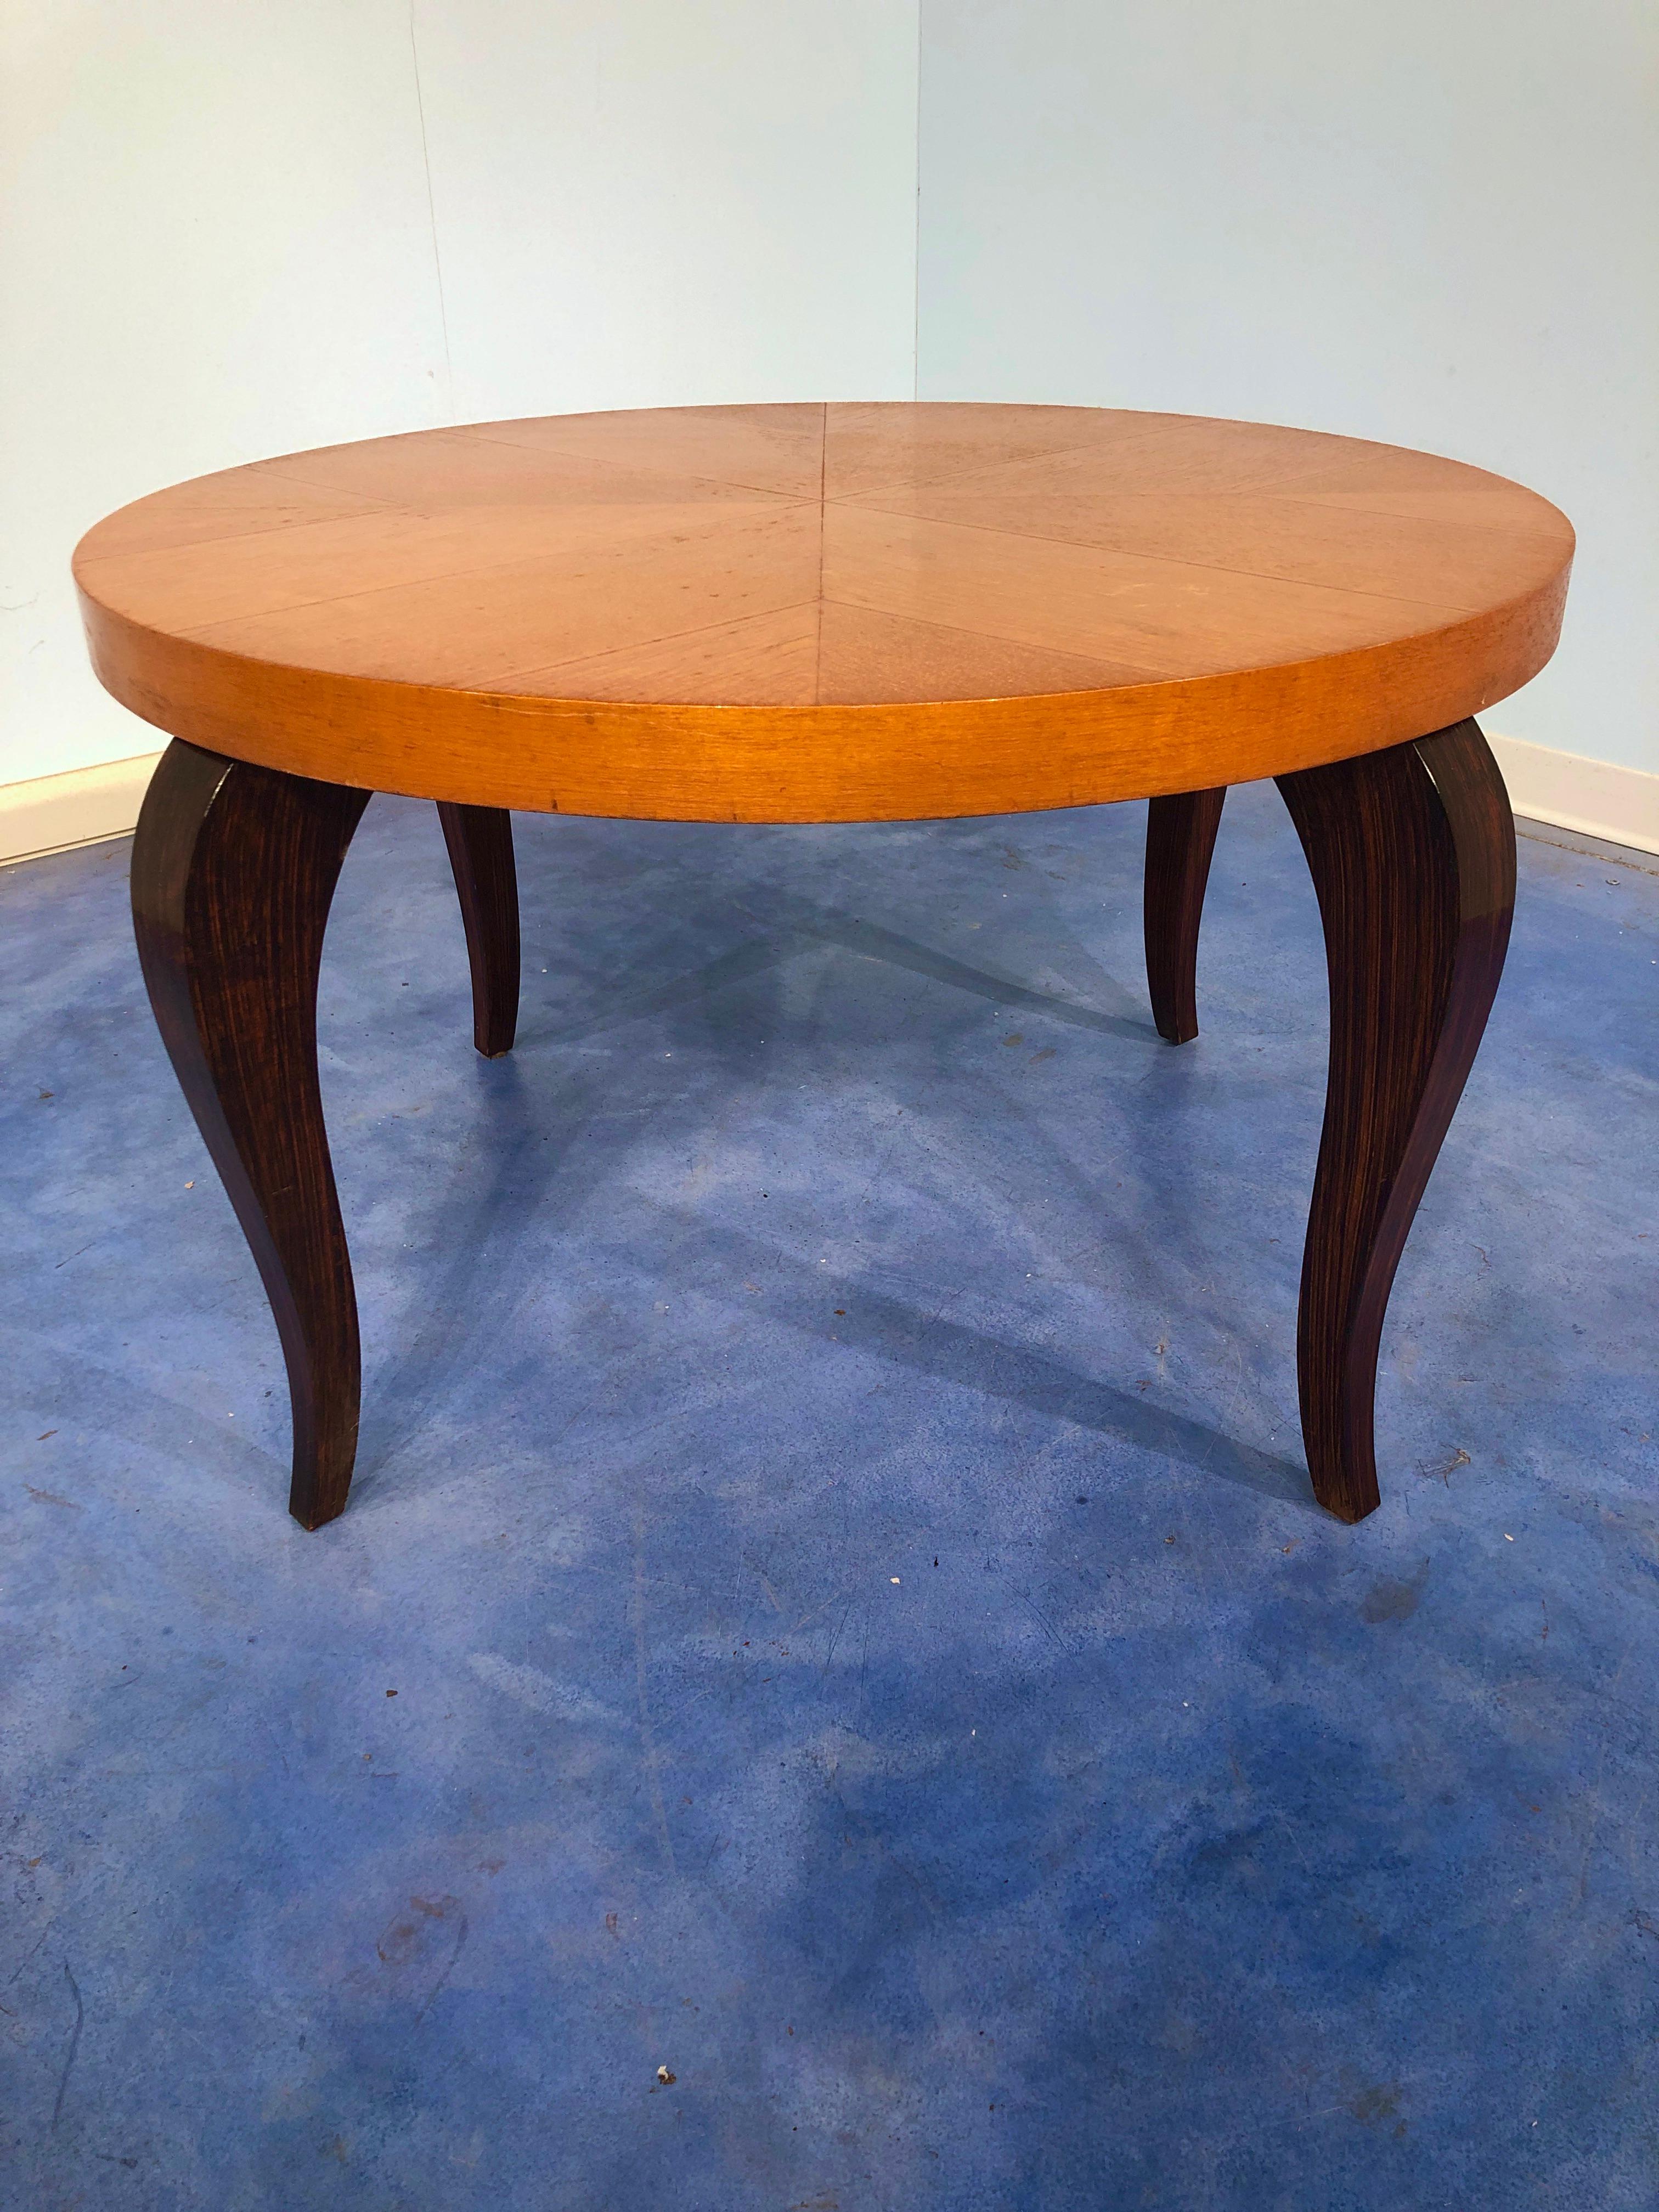 Schlichter, aber sehr schöner französischer Art-déco-Couchtisch, 1940.
Die Tischplatte aus Ahornholz und die stilvollen Beine verleihen dem Tisch eine sehr elegante Note.
Auf den Bildern können Sie sehen, dass sich das Muster auf der Oberseite aus